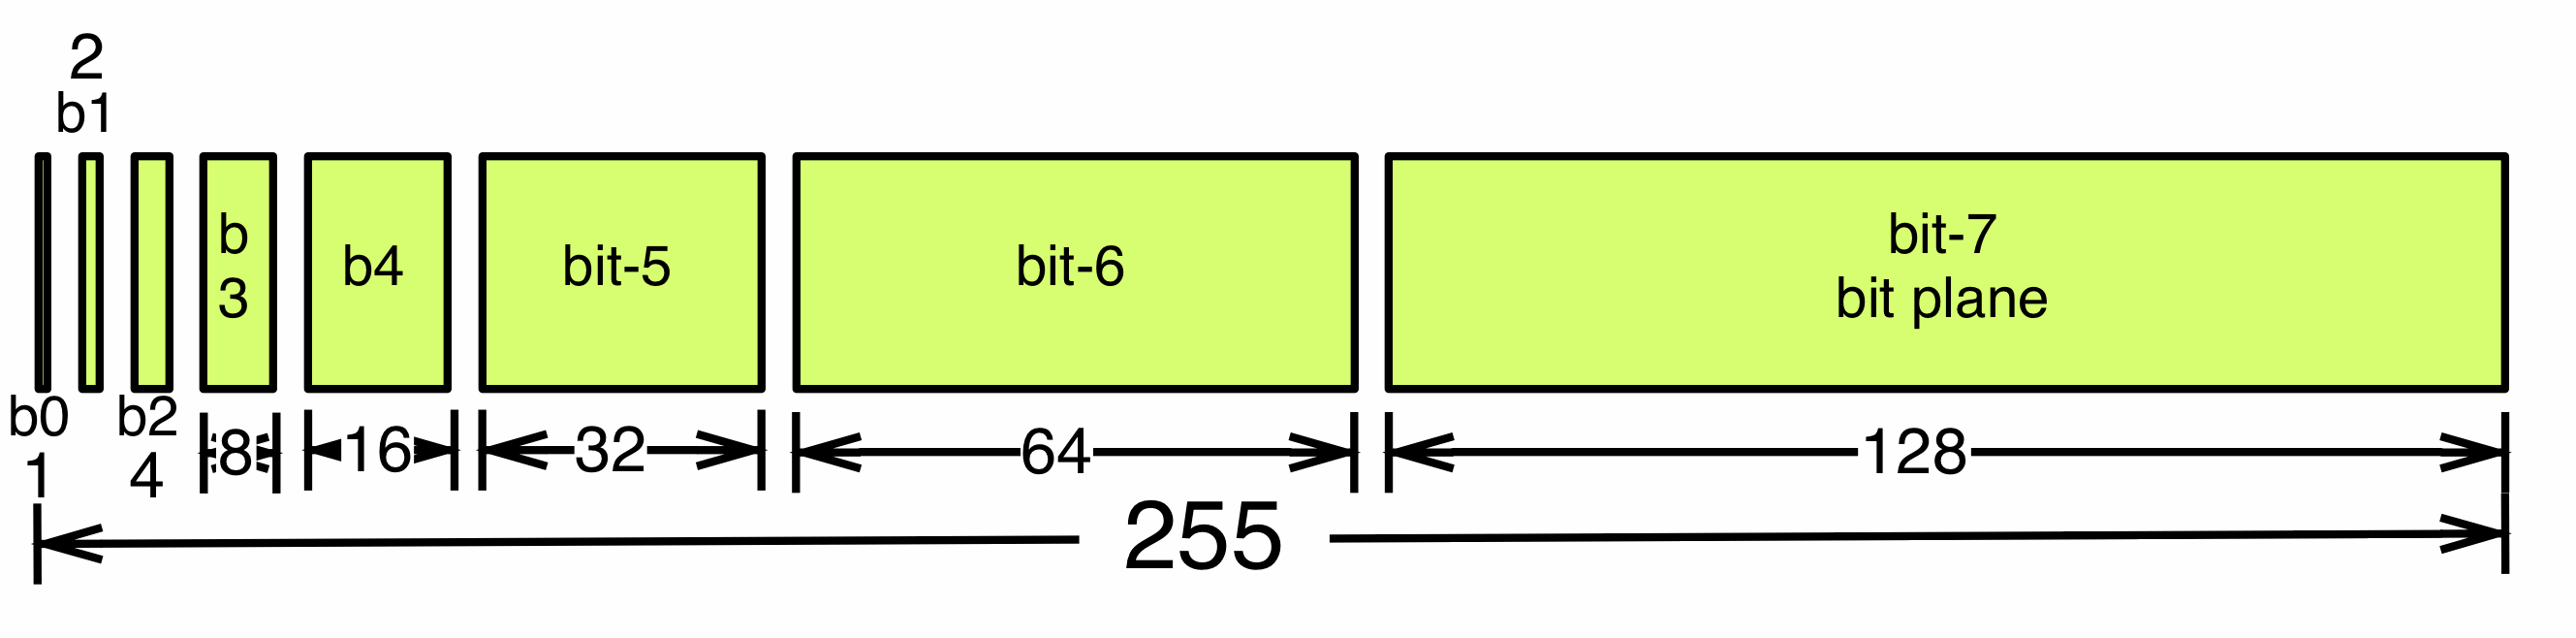 GUID-BF61E499-CB7B-4129-9284-DB4C800970EF-low.gif